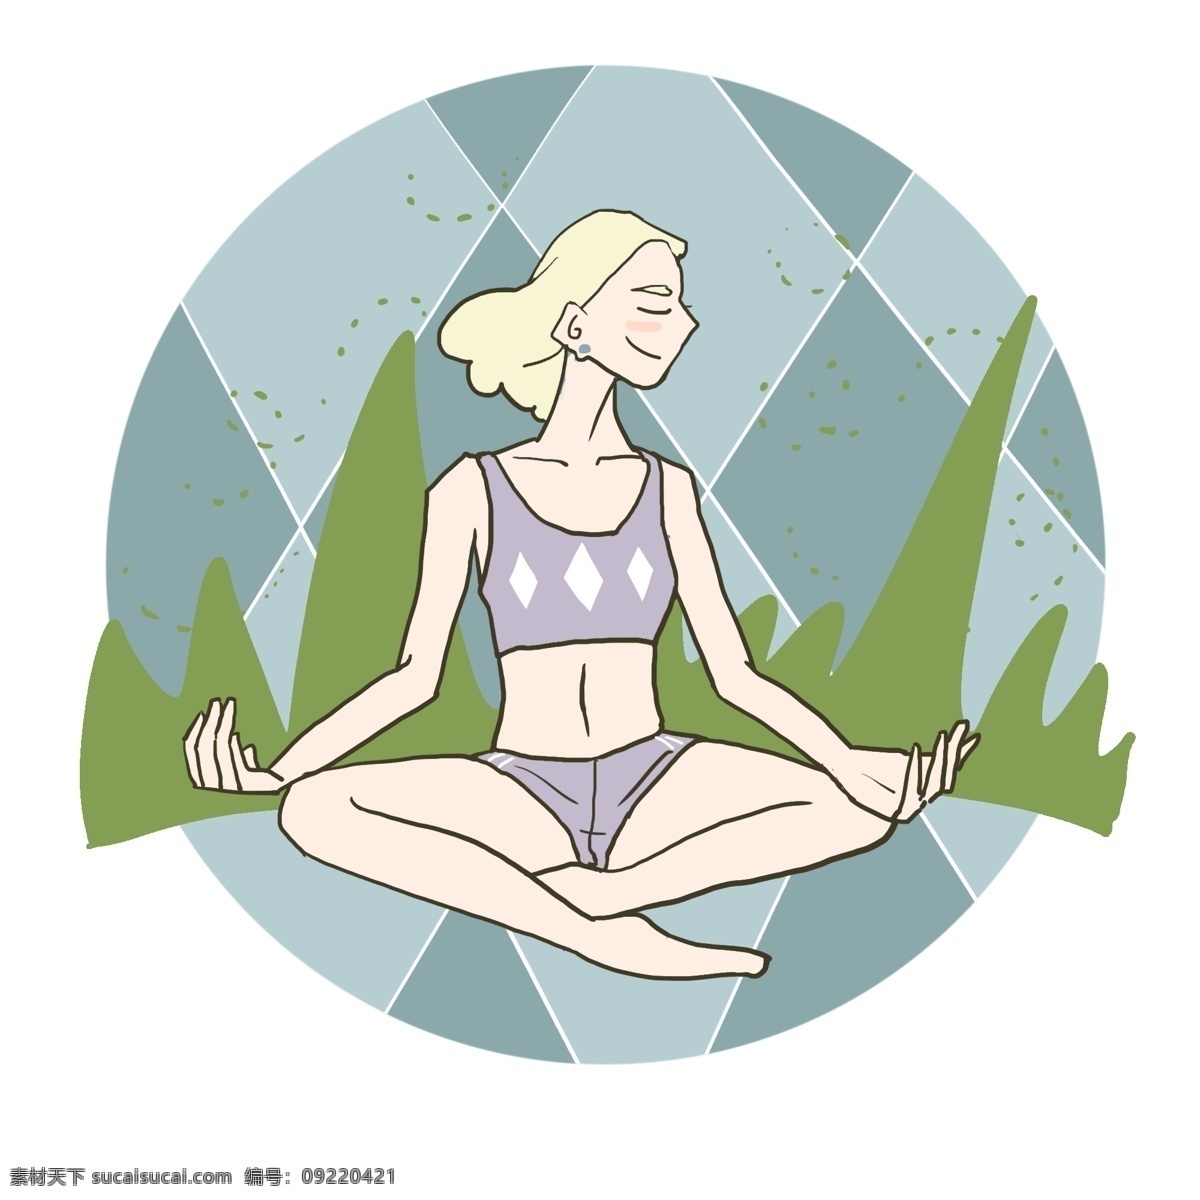 女士 健身 手绘 插画 健身人物 运动 健康 瑜伽 静坐 人物插画 女士健身 绿色树木 健身人物插画 女士插画